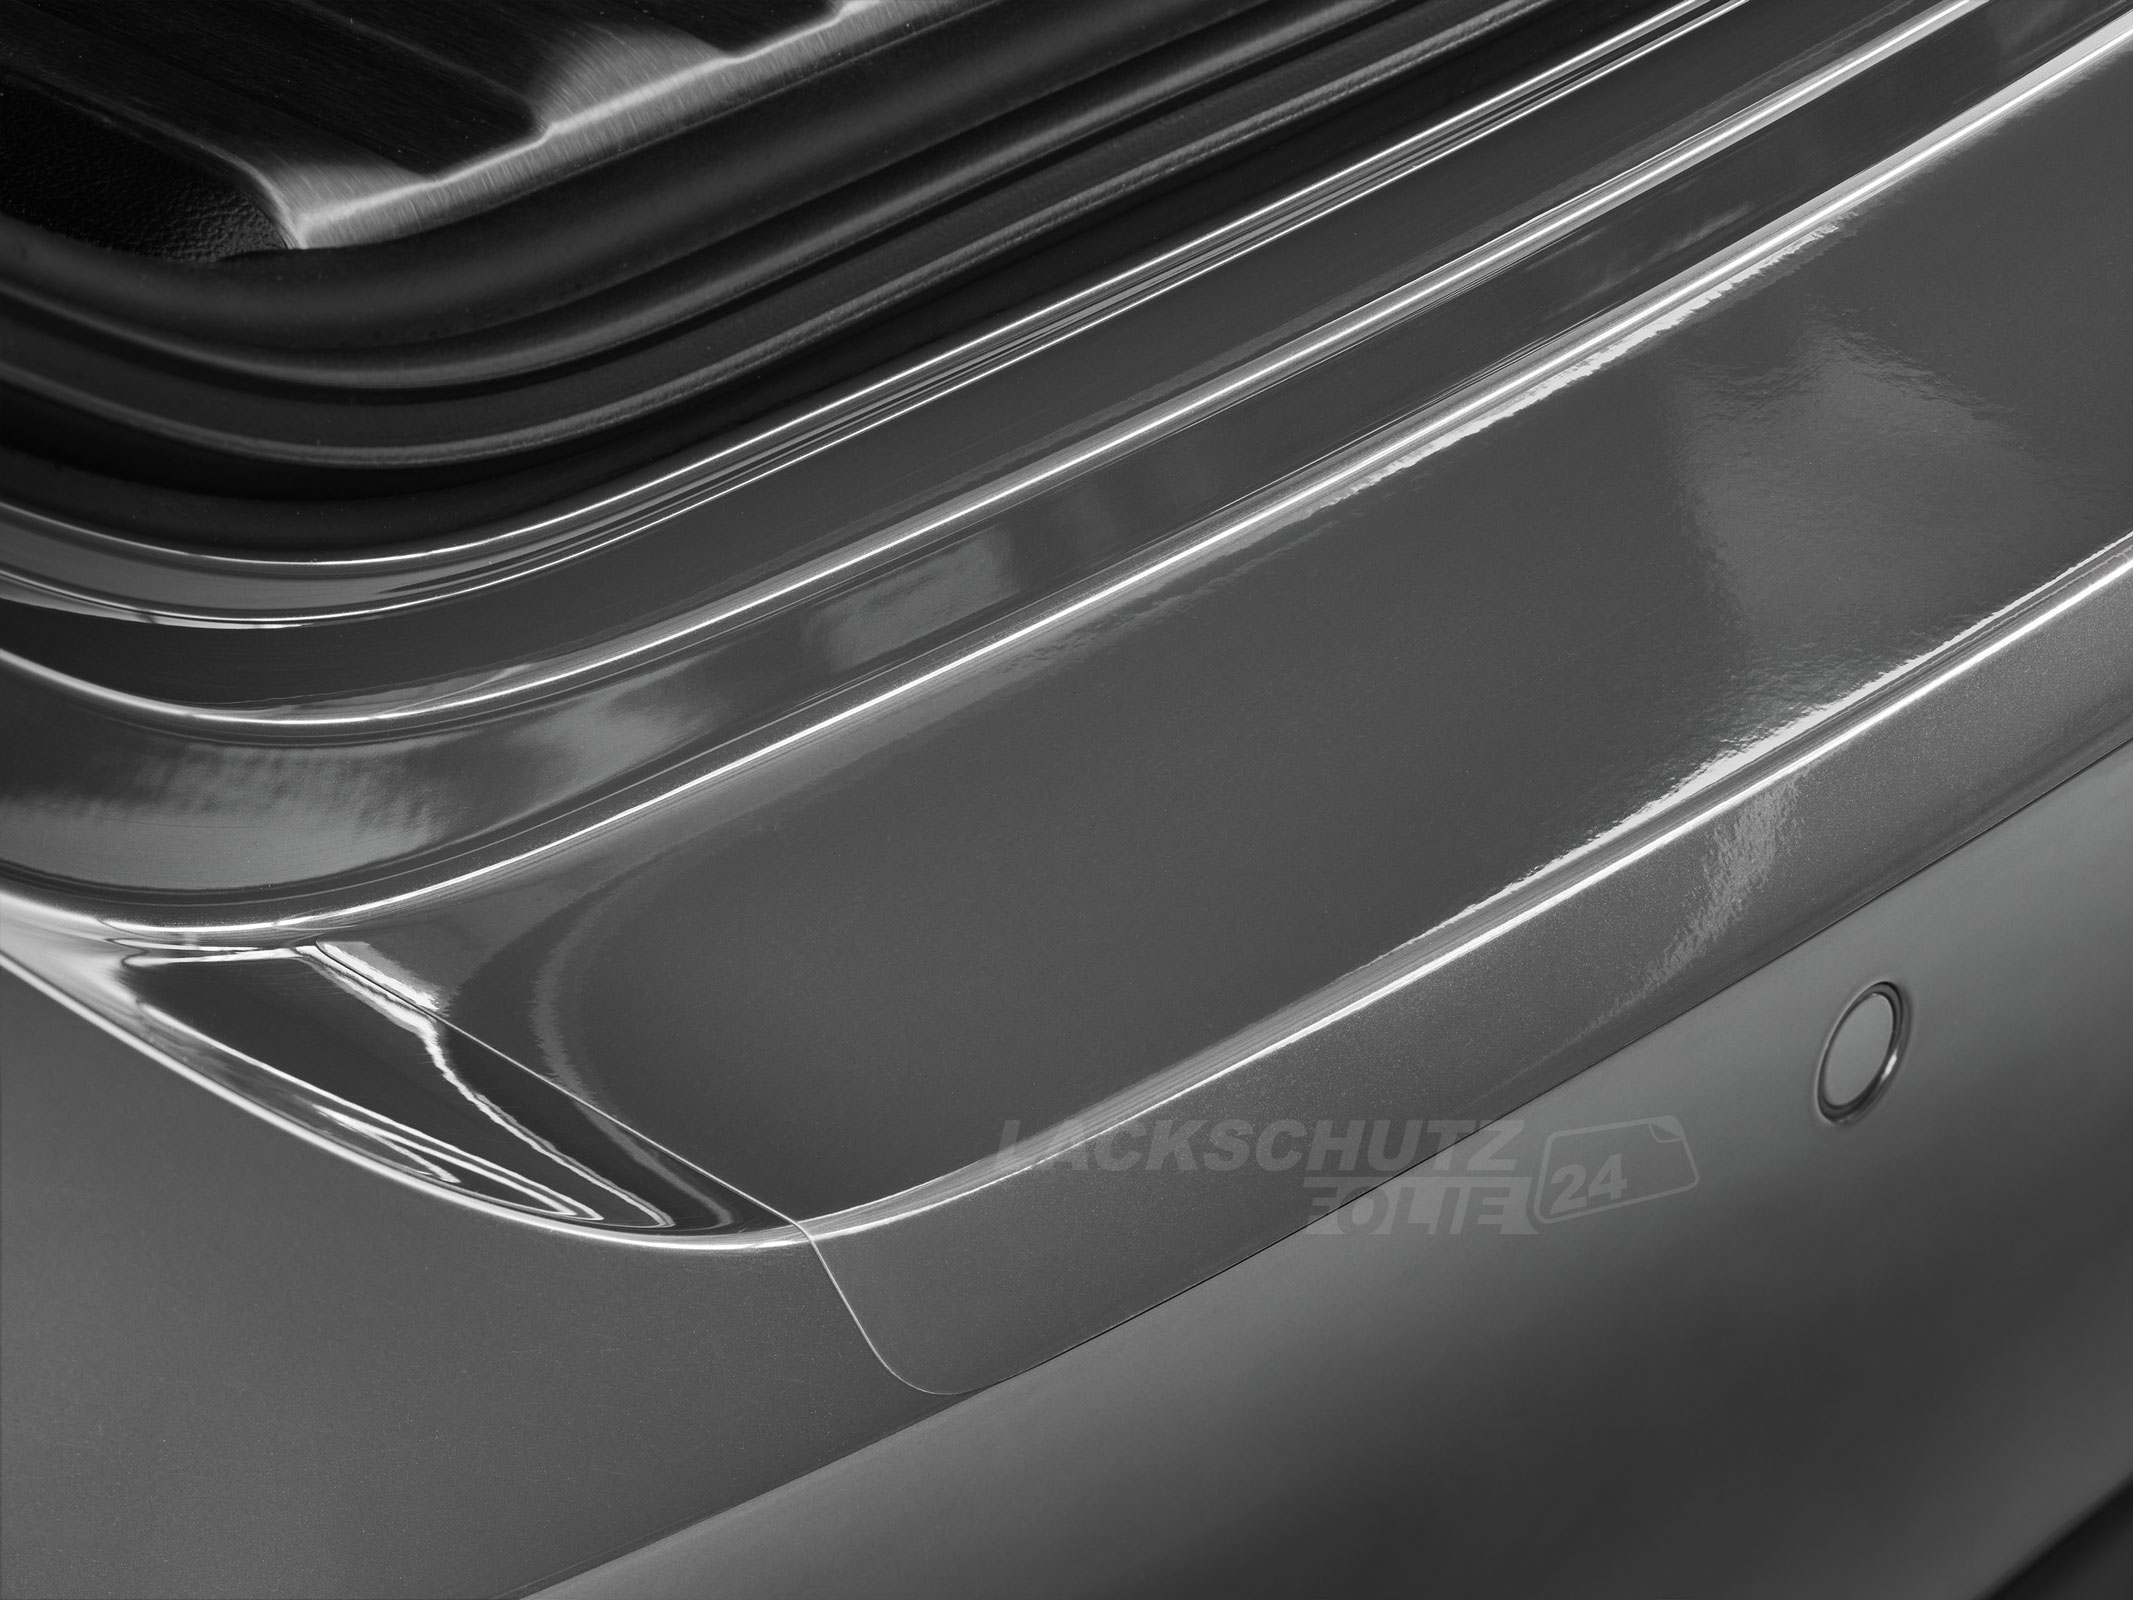 Ladekantenschutzfolie - Transparent Glatt Hochglänzend 240 µm stark für Lancia Ypsilon Typ 846 ab BJ 2010